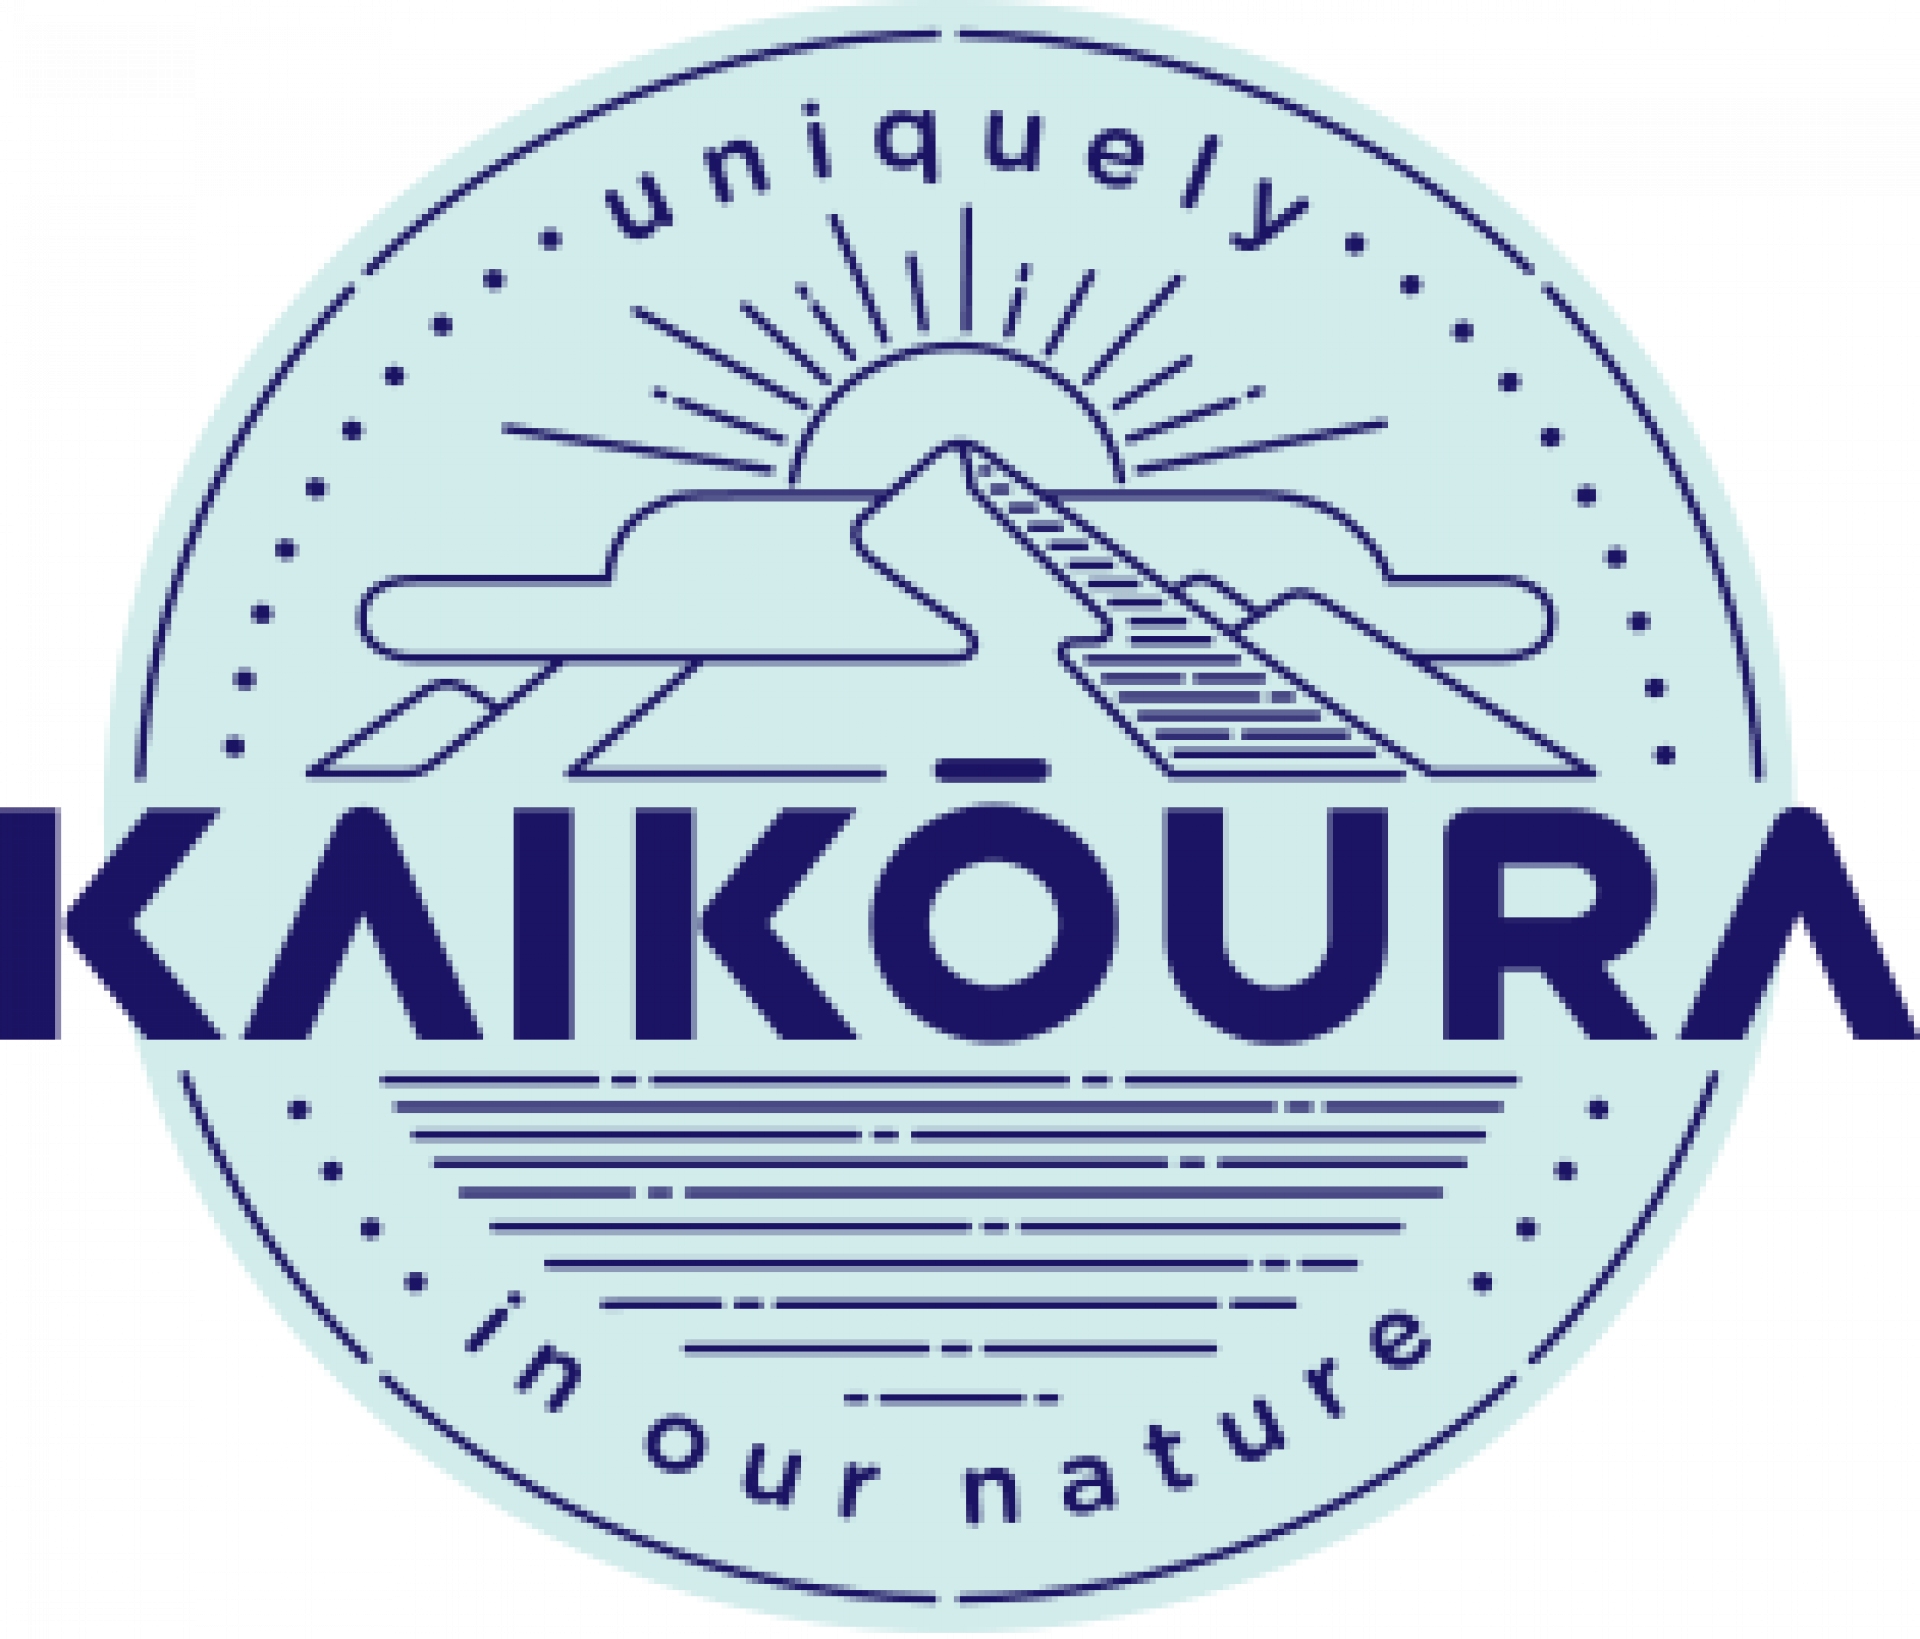 Kaikōura